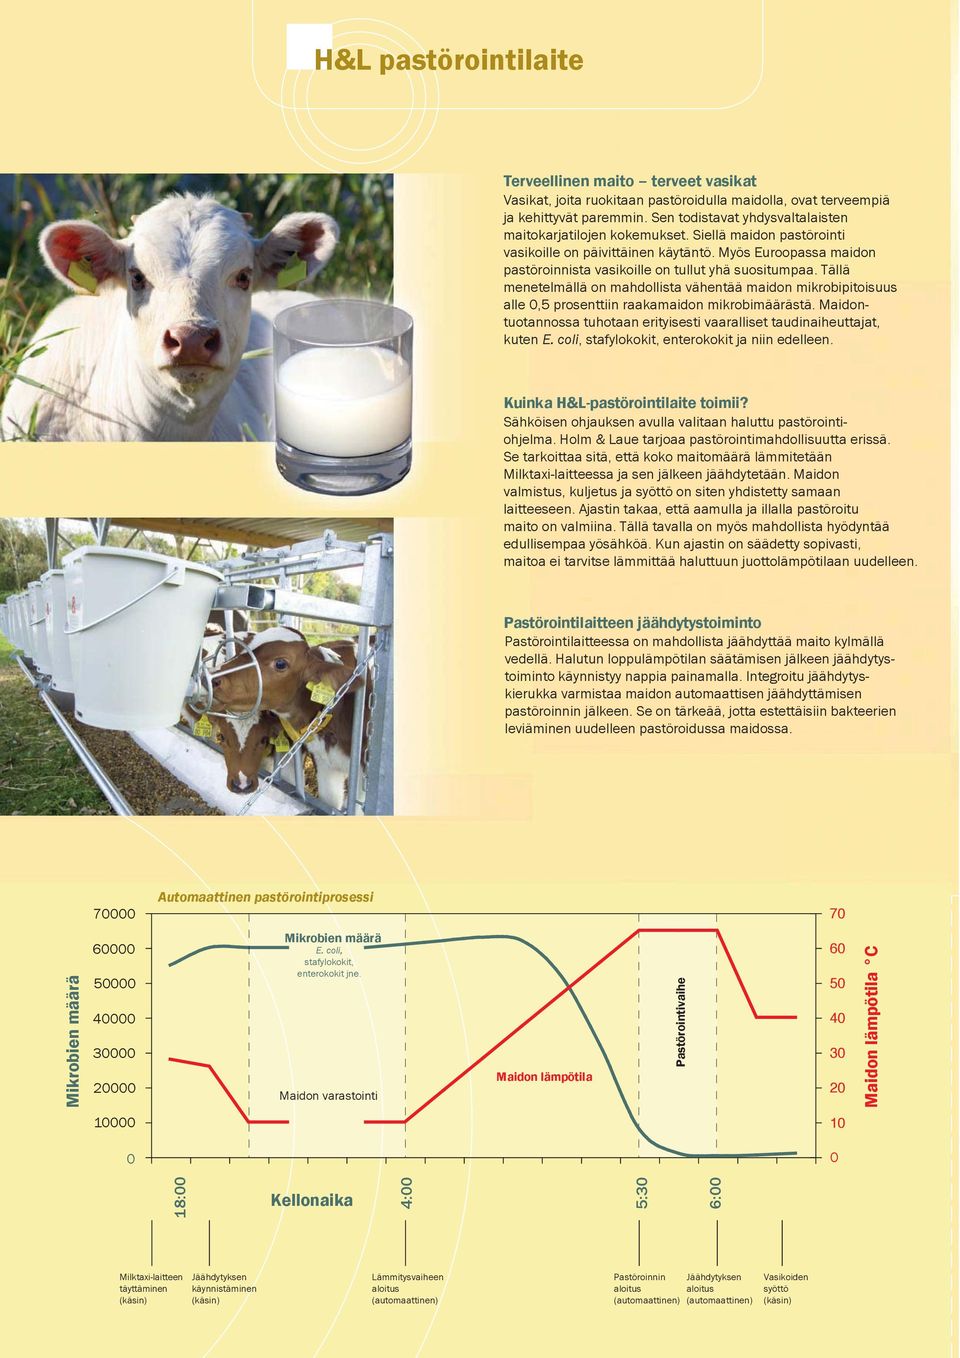 Myös Euroopassa maidon pastöroinnista vasikoille on tullut yhä suositumpaa. Tällä menetelmällä on mahdollista vähentää maidon mikrobipitoisuus alle 0,5 prosenttiin raakamaidon mikrobimäärästä.